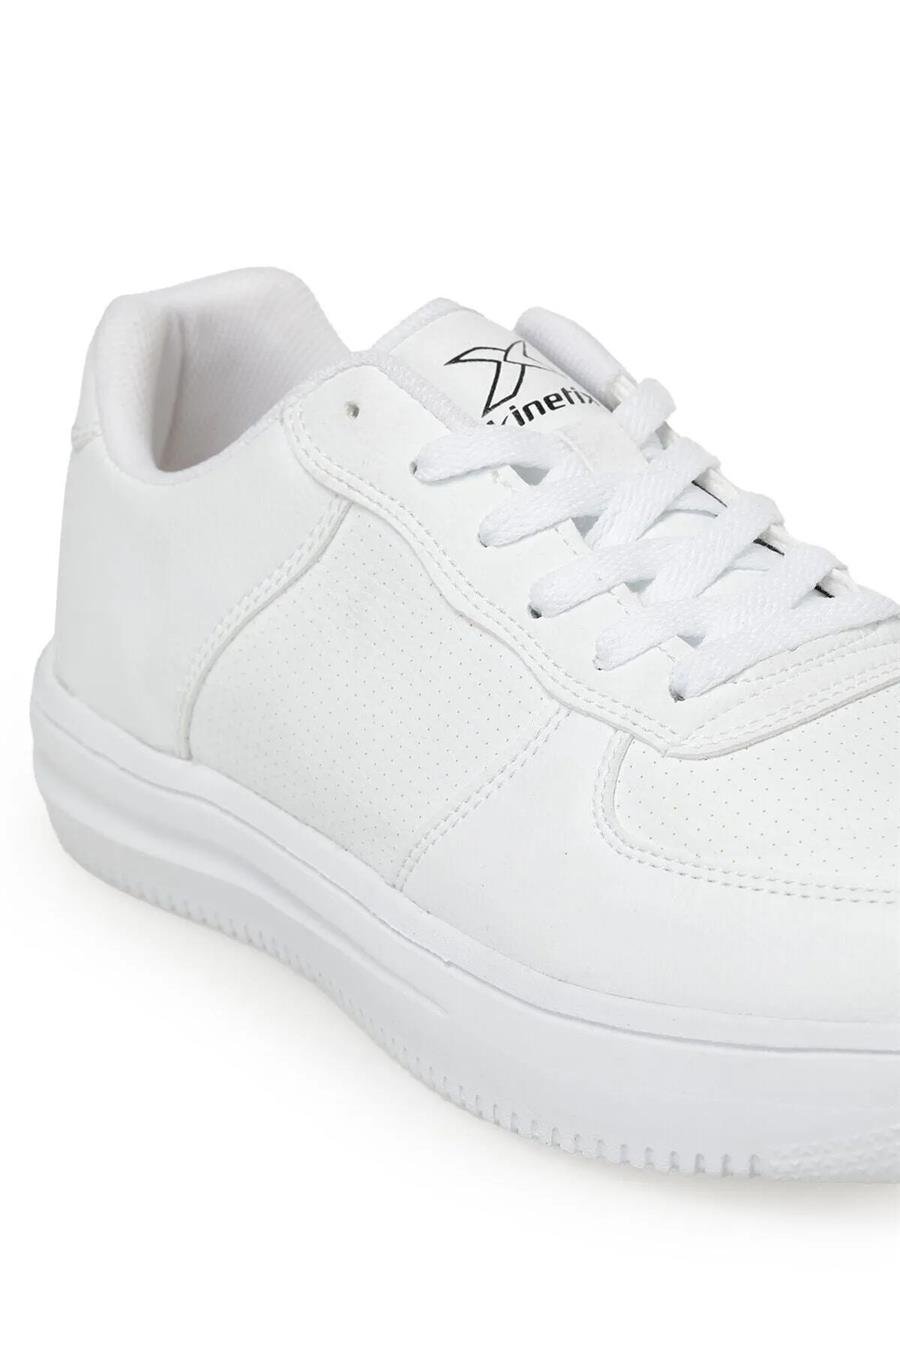 Kinetix Abella Pu W 3Pr Beyaz Kadın Sneaker Ayakkabı